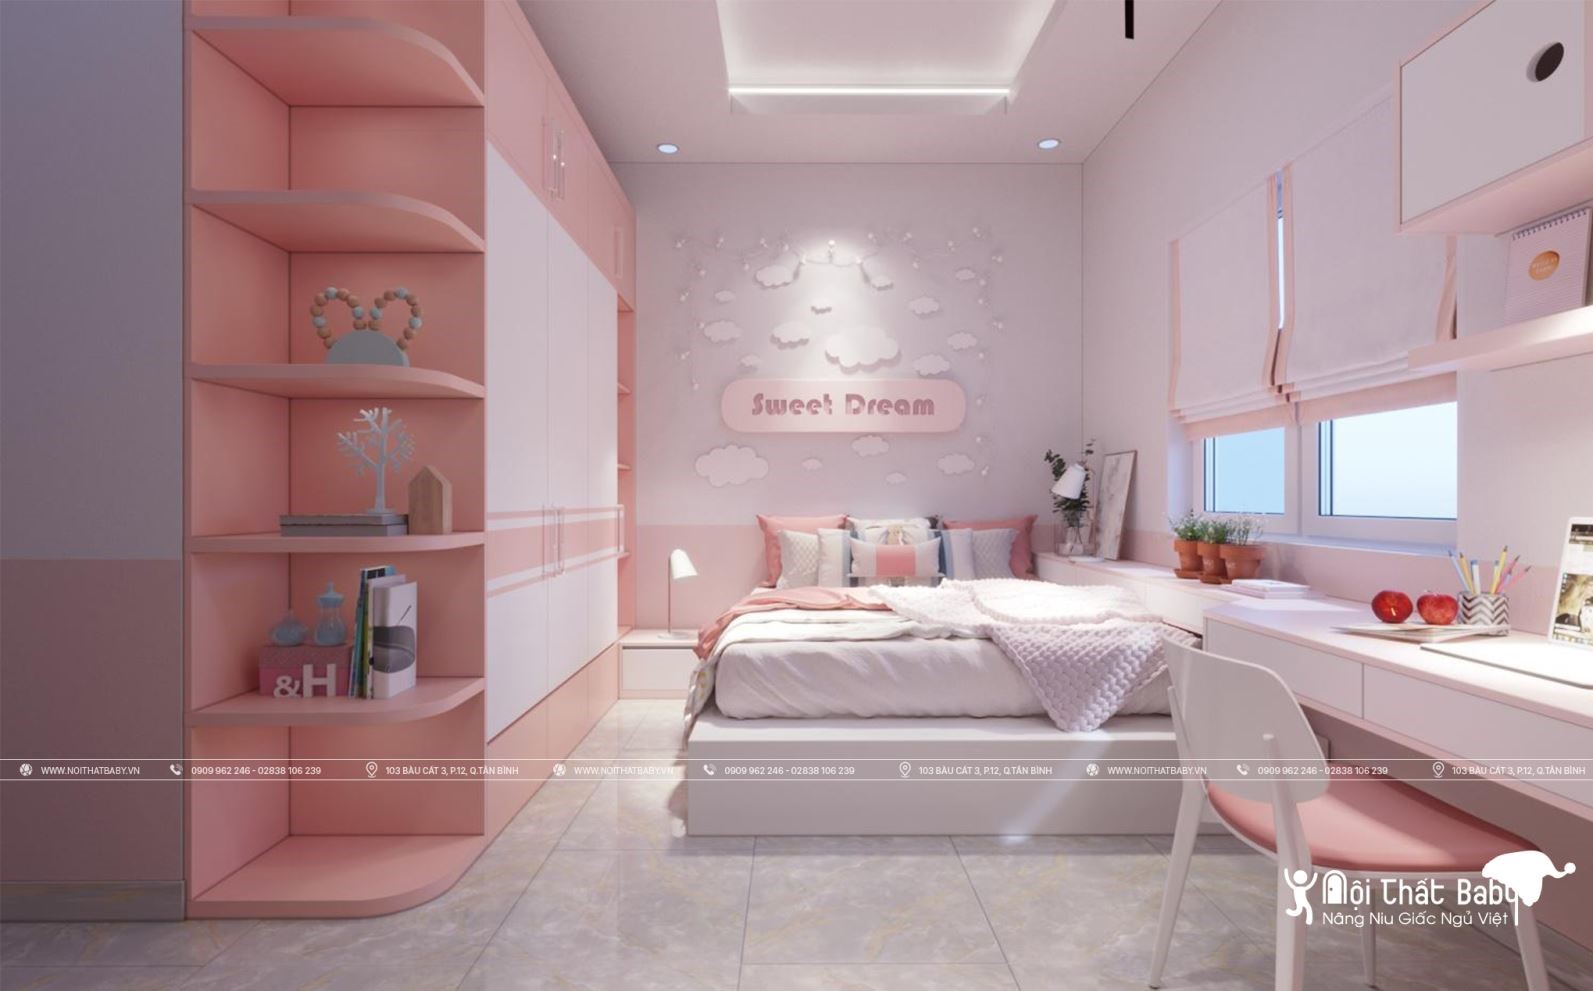 Bộ sưu tập những mẫu thiết kế phòng ngủ bé gái siêu dễ thương năm 2020